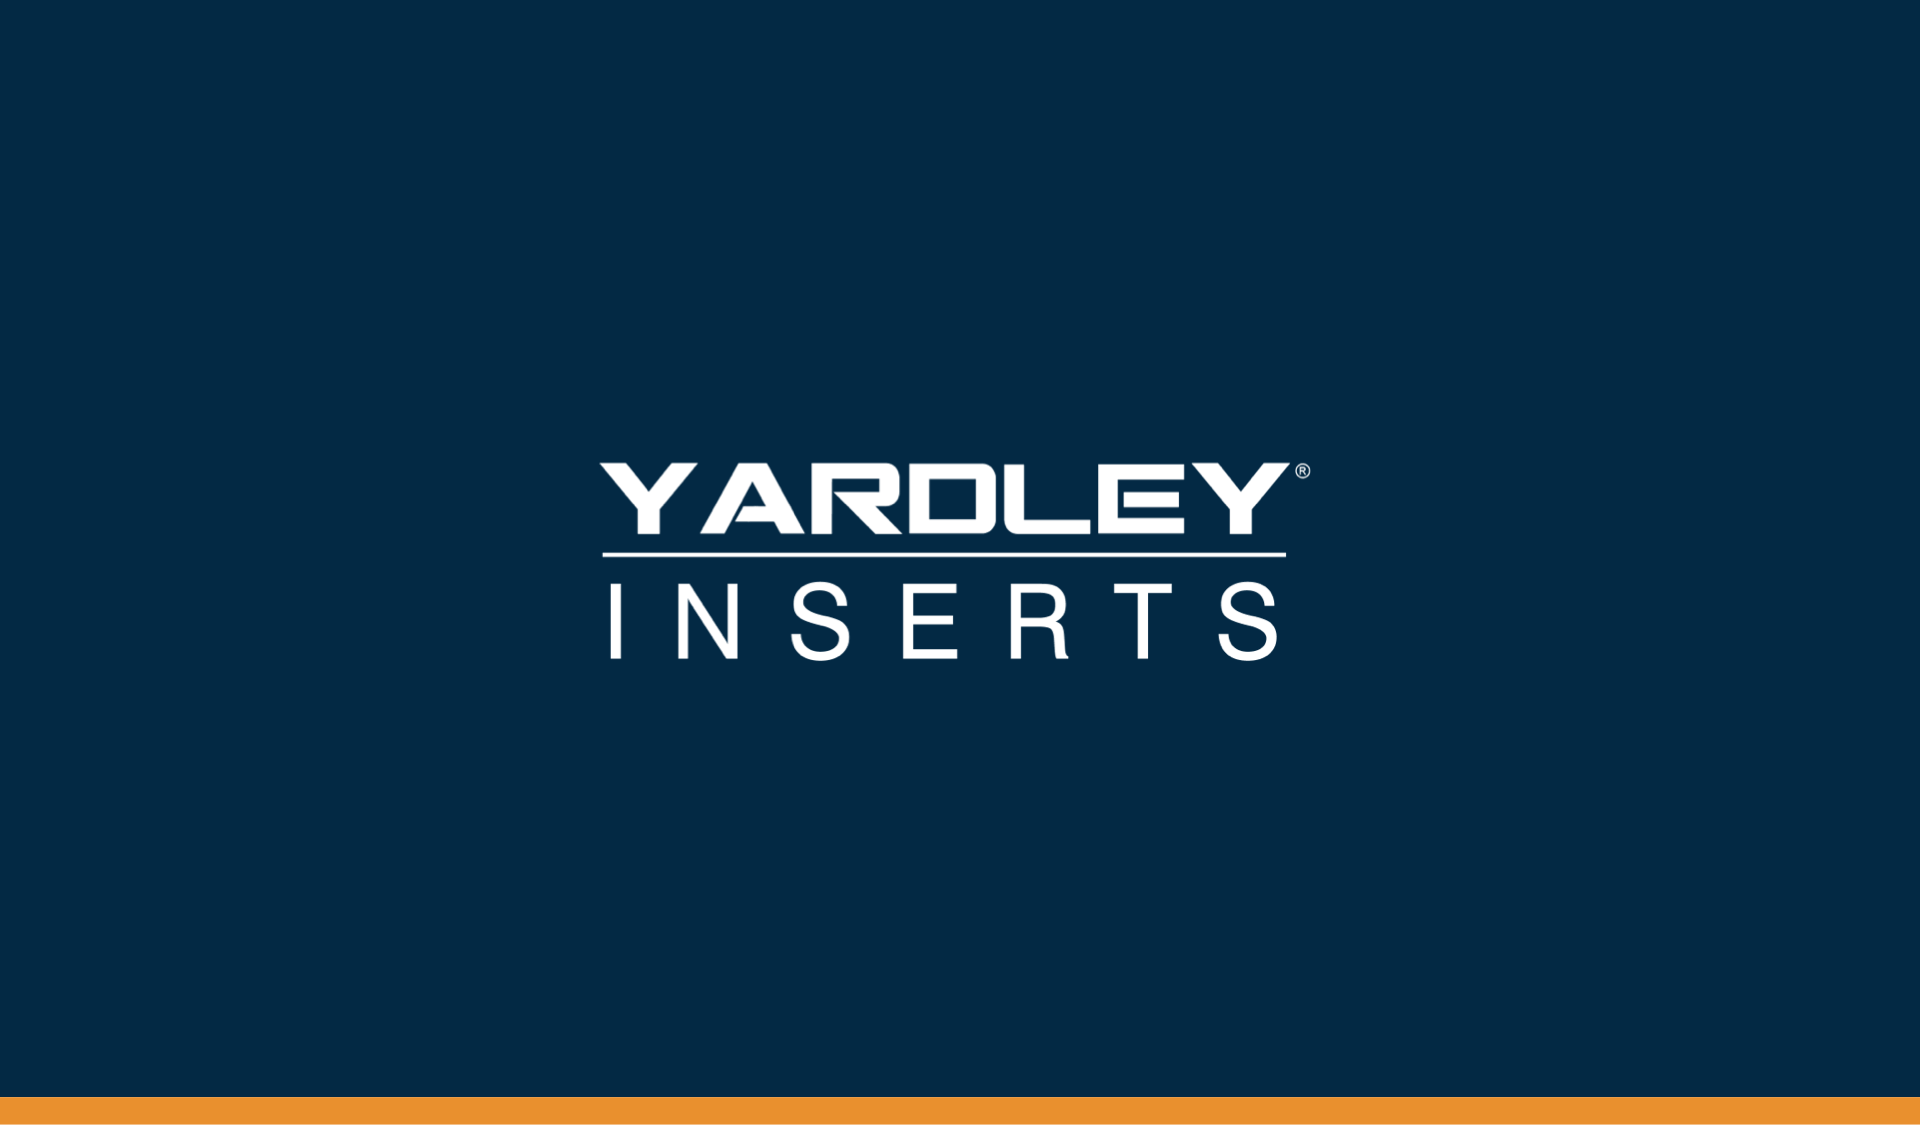 yardley inserts brand